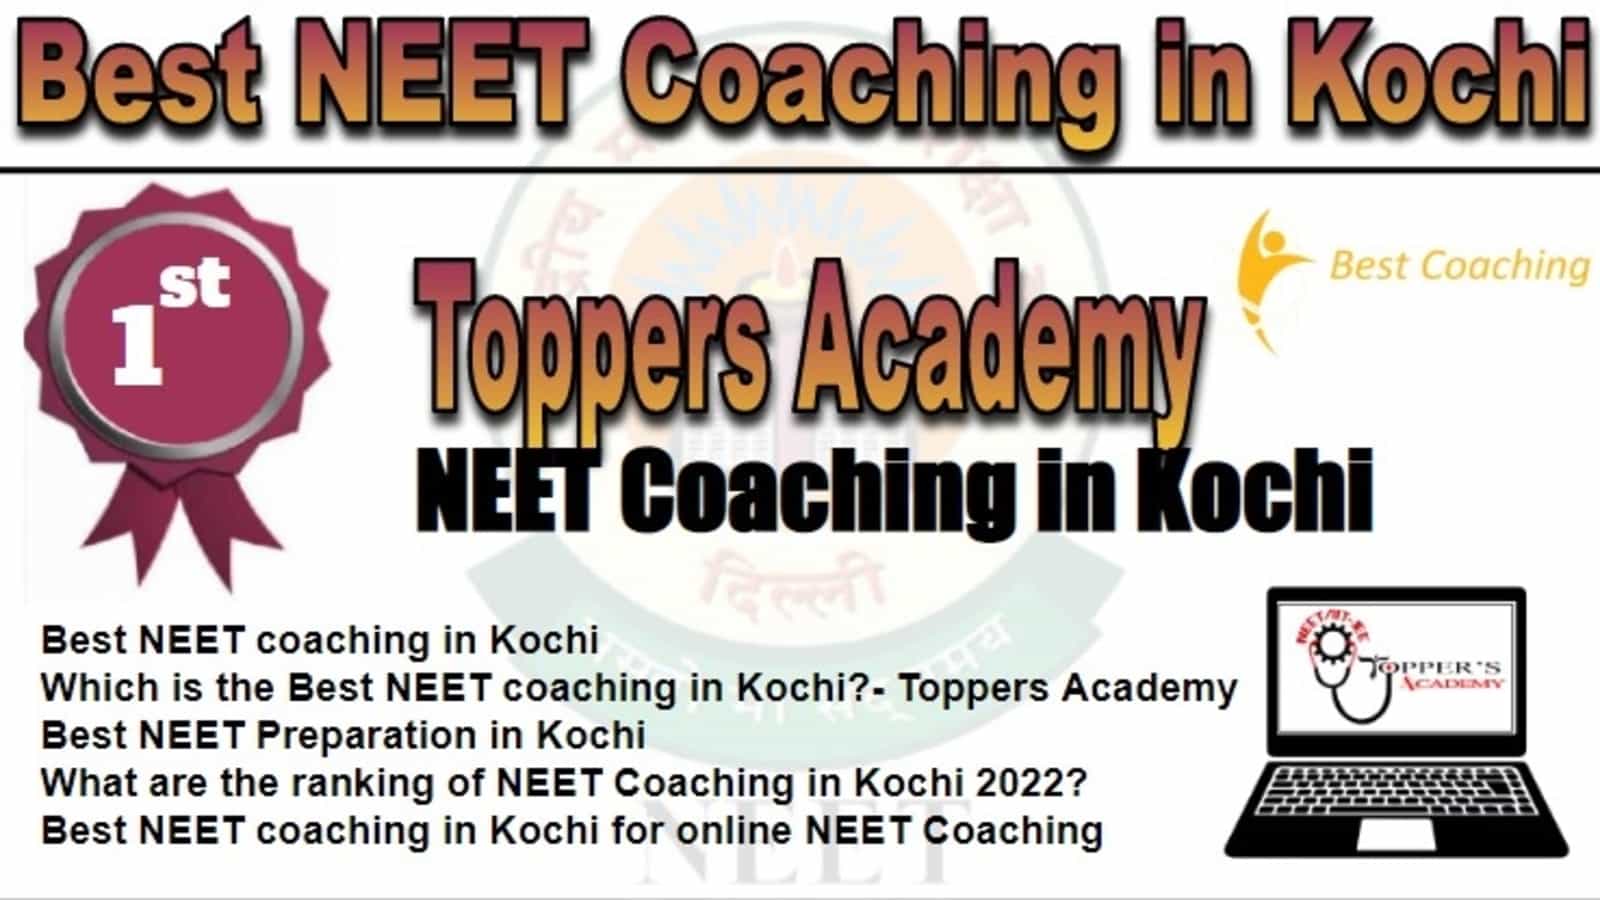 Rank 1 Best NEET Coaching in Kochi